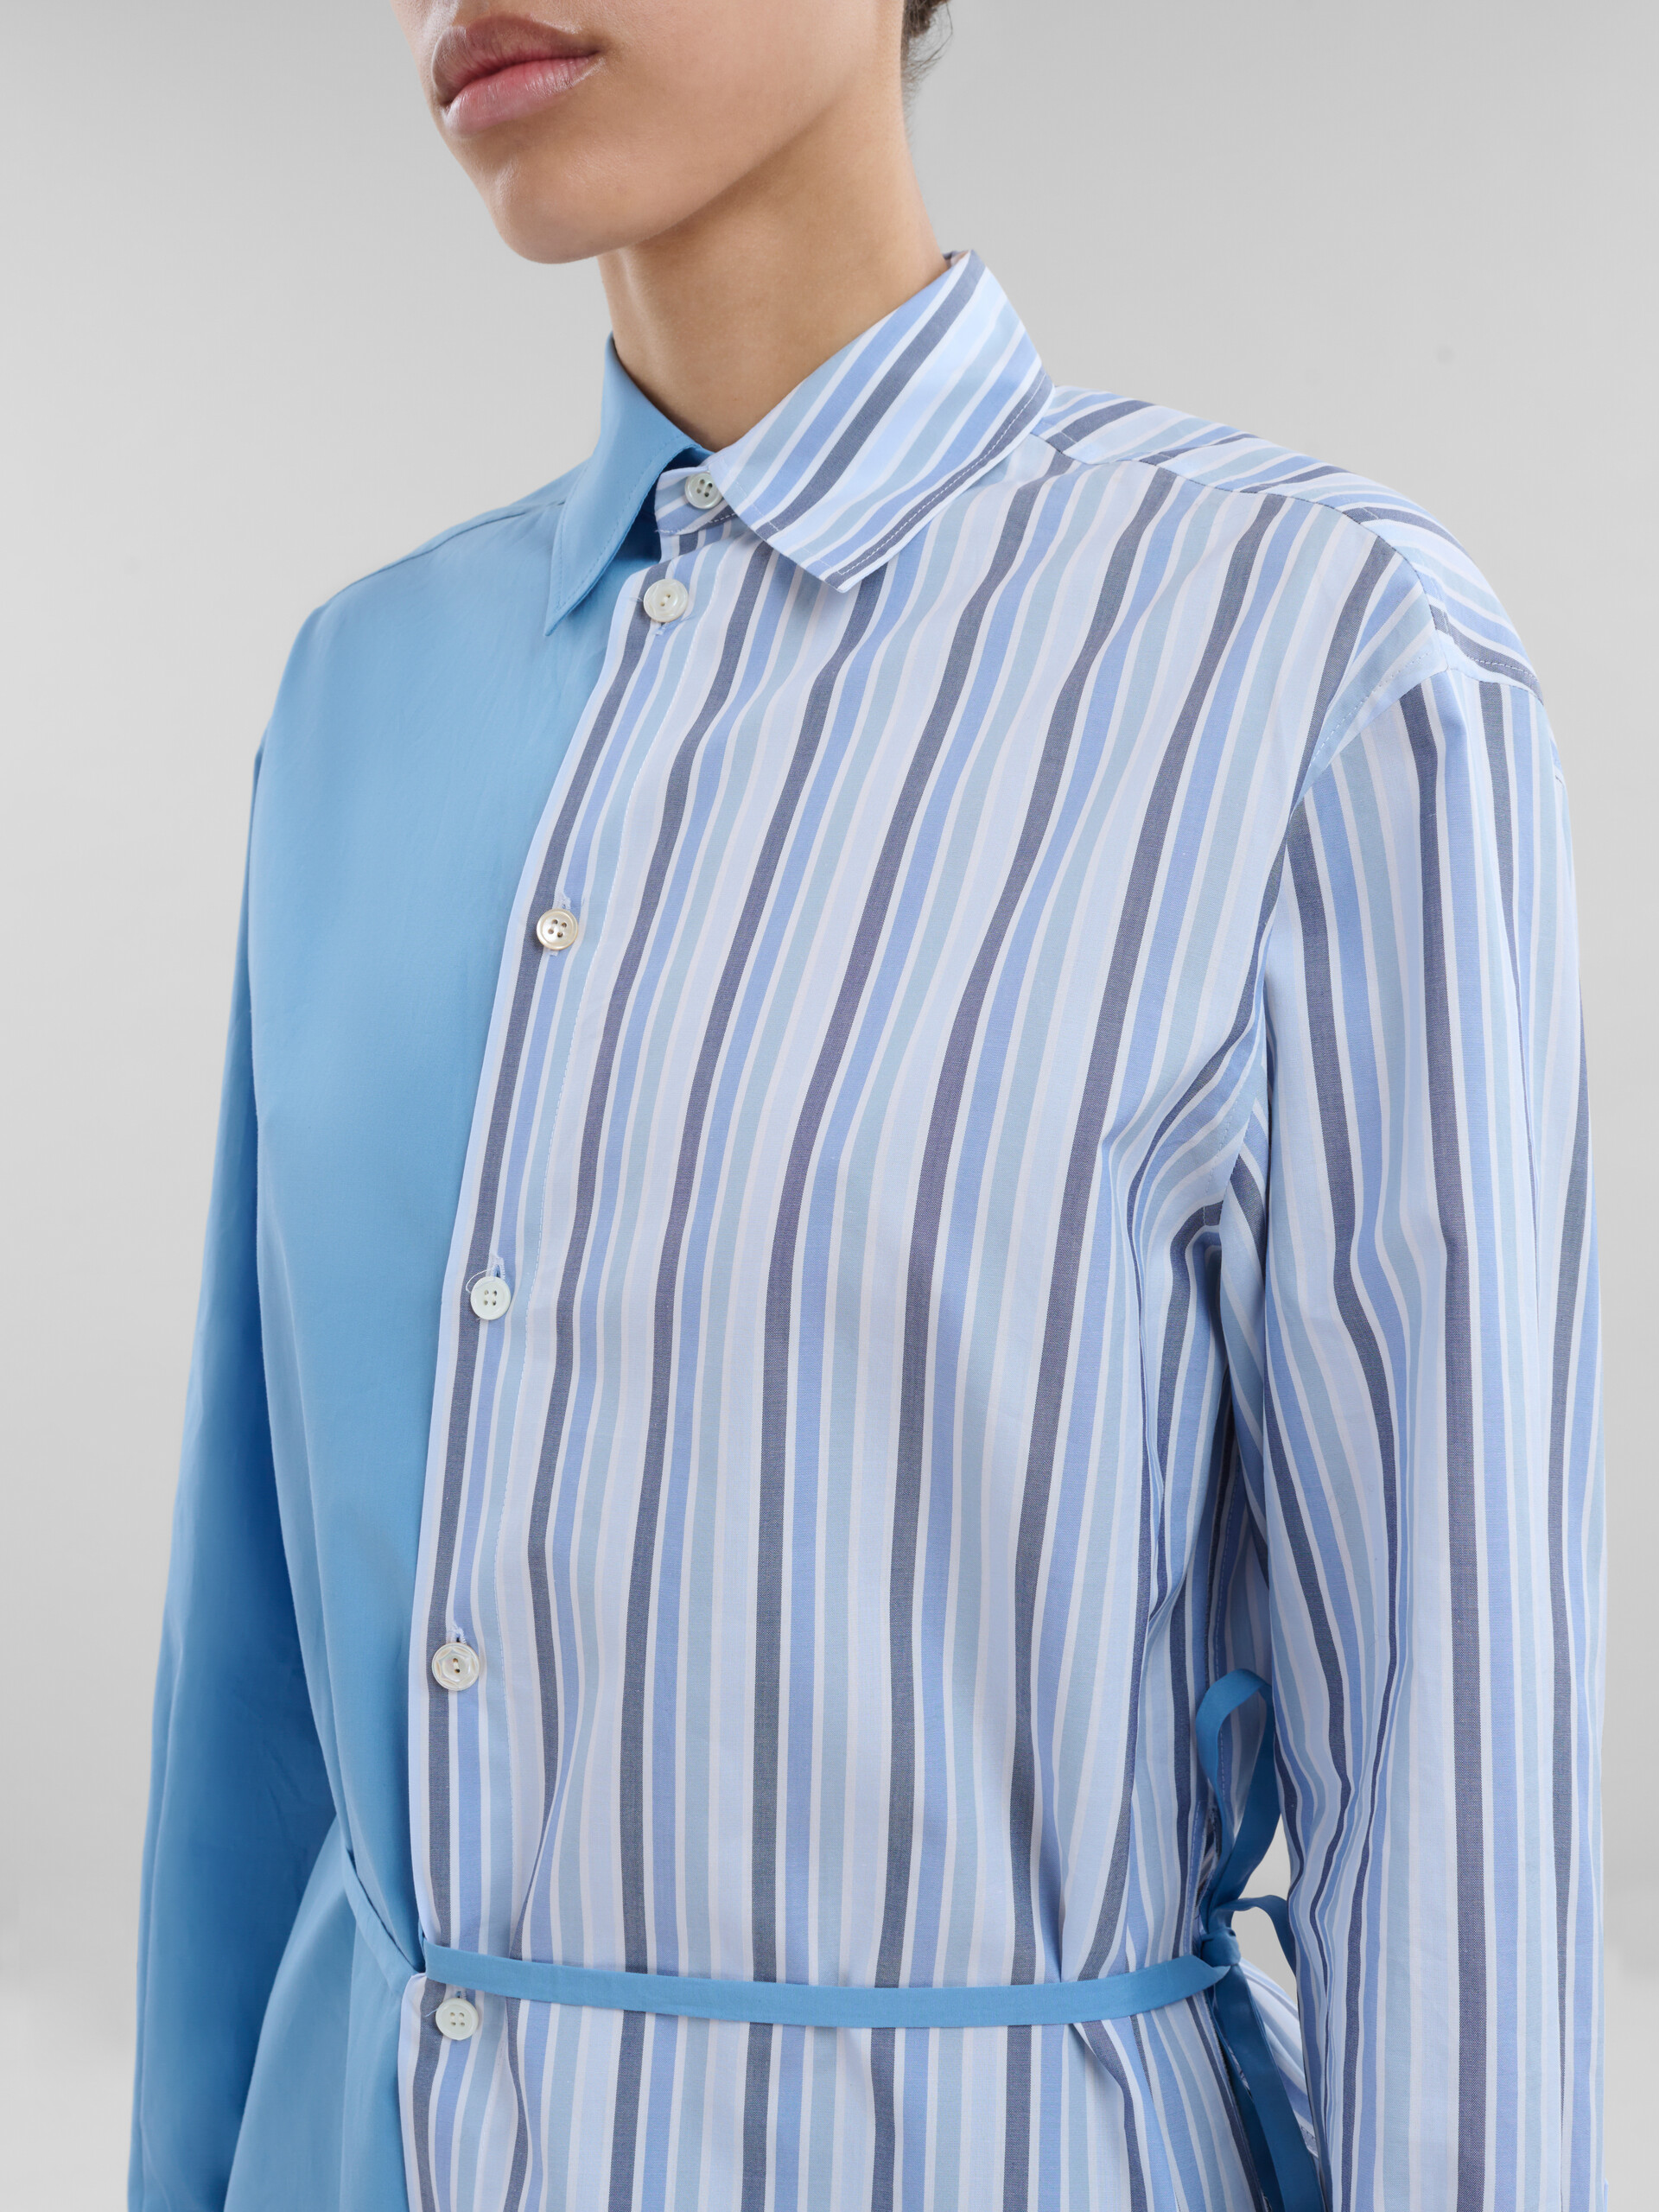 Camicia metà e metà in popeline biologico blu con laccio - Camicie - Image 4